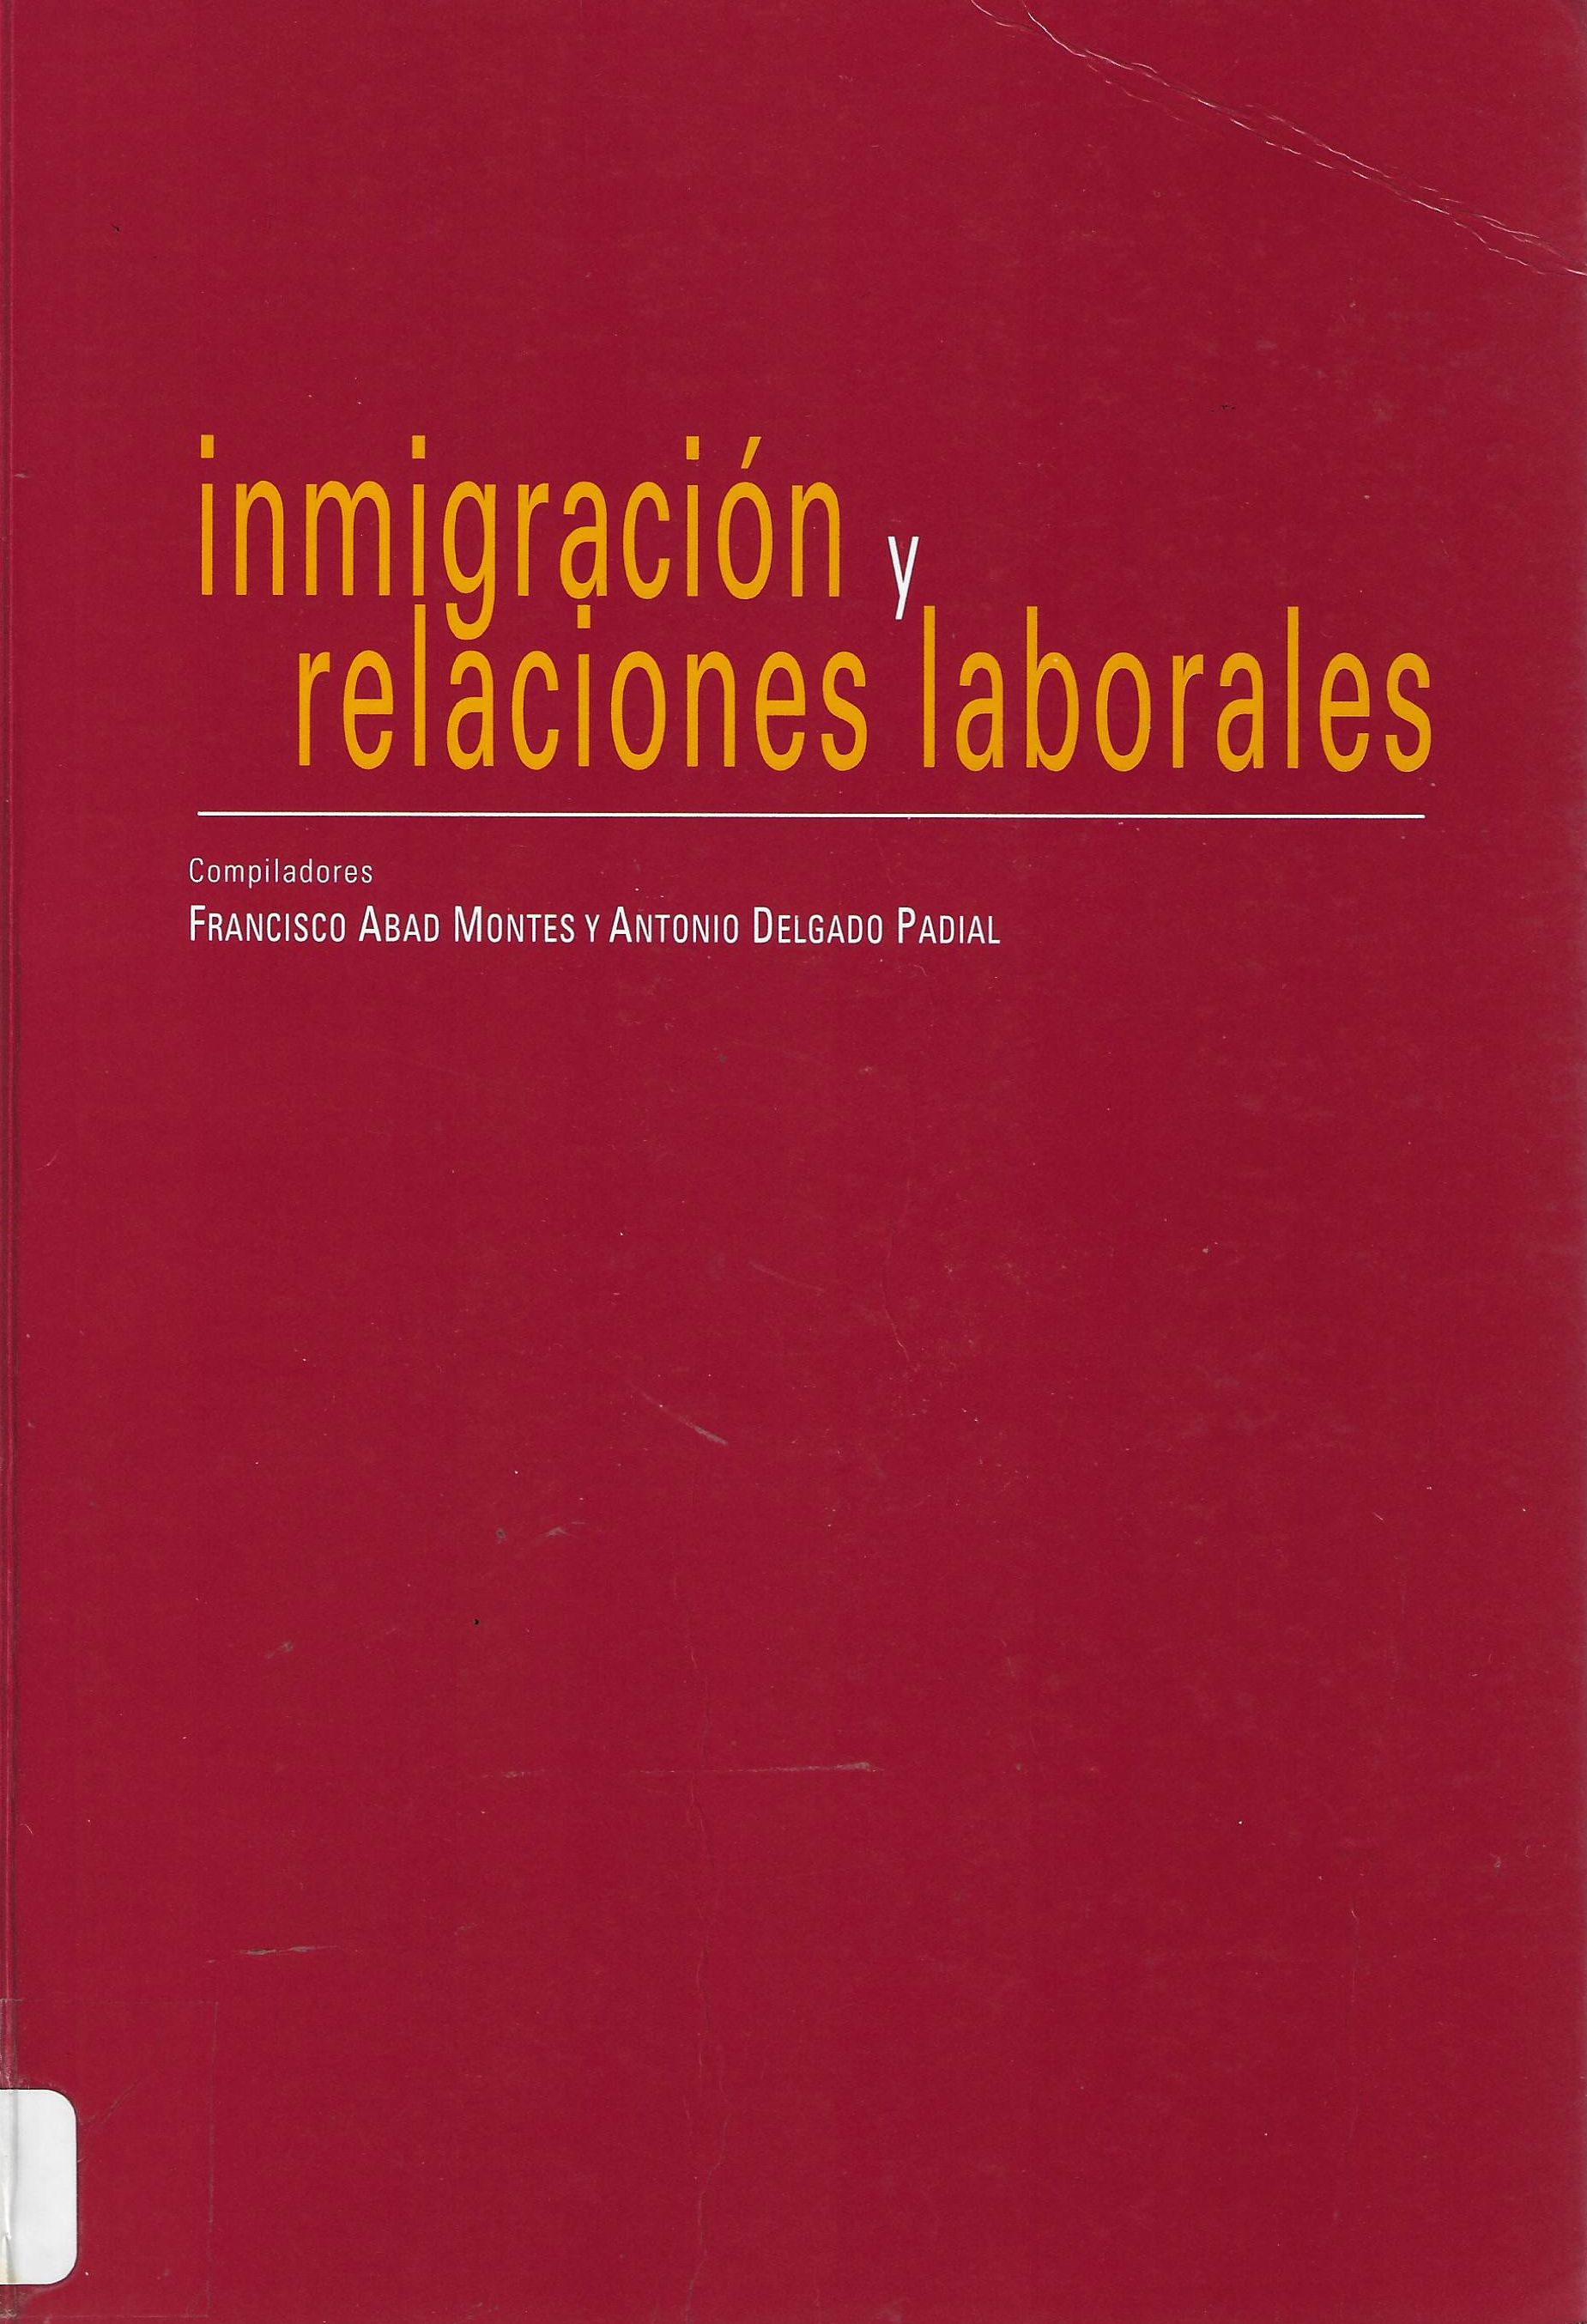 Imagen de portada del libro Inmigración y relaciones laborales